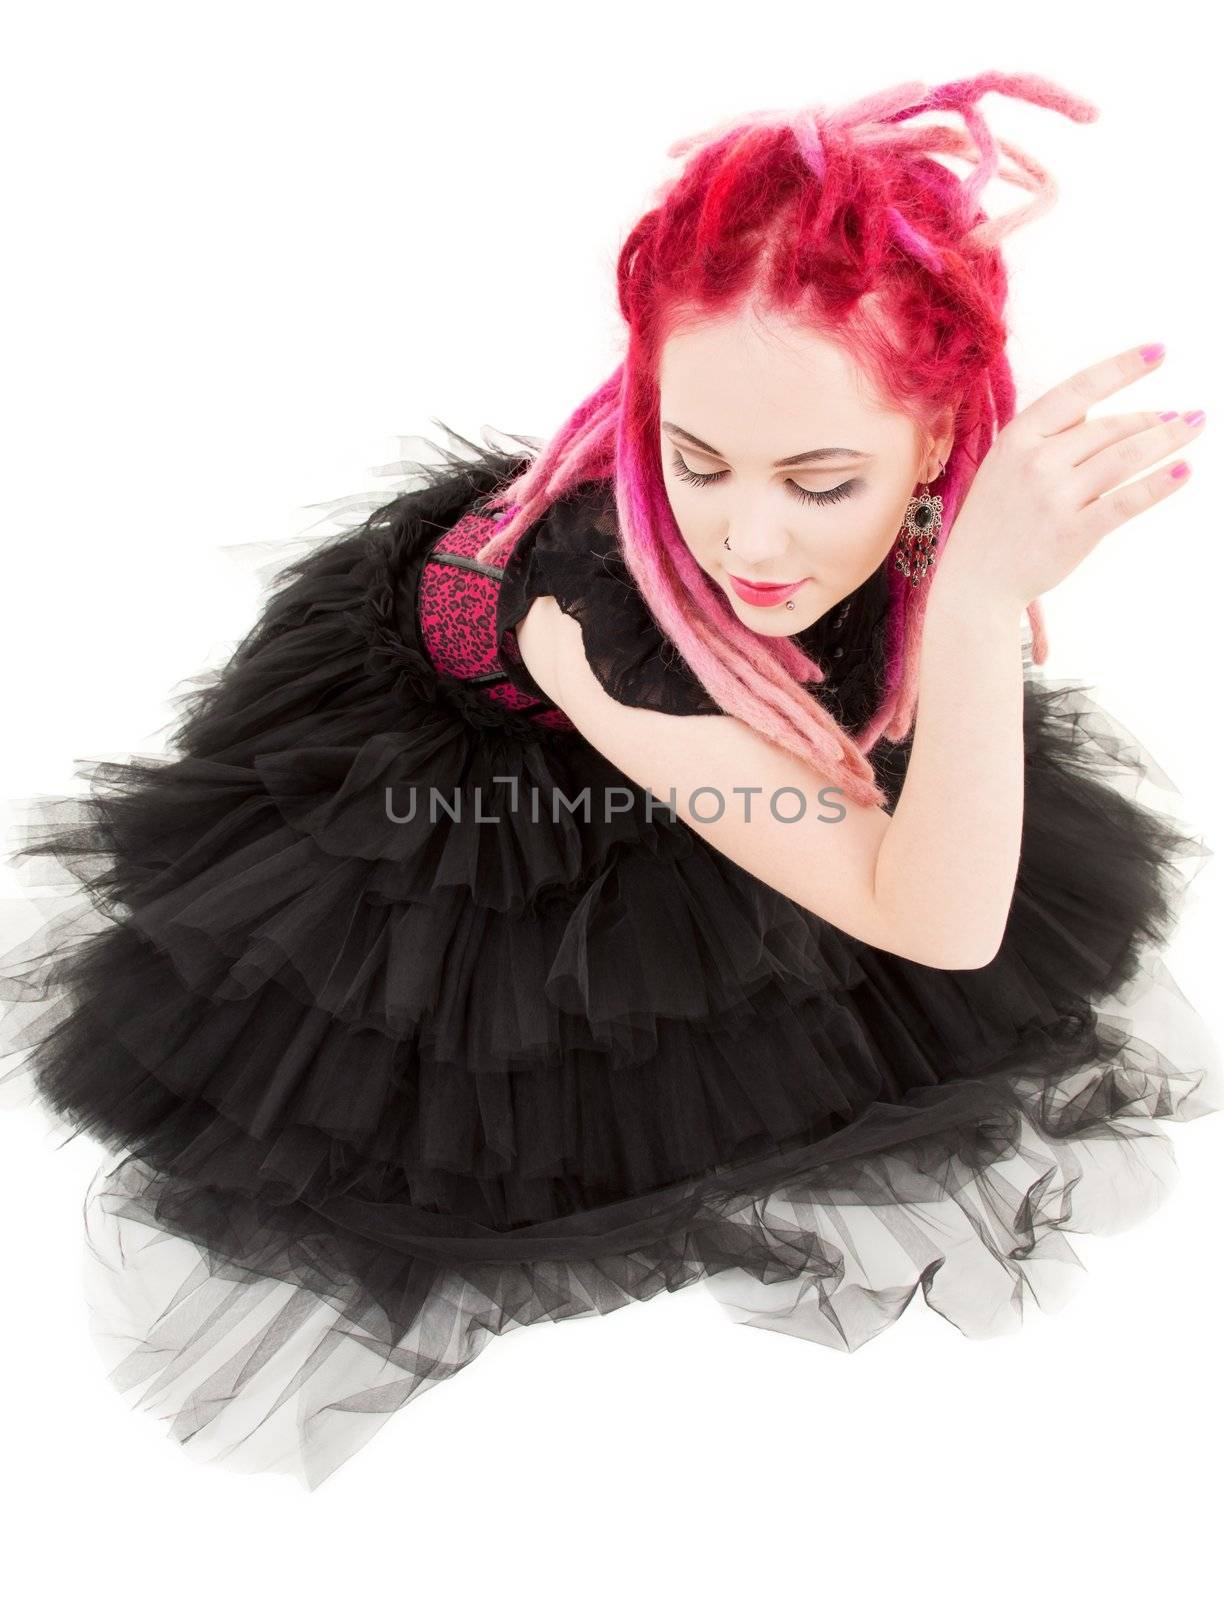 dancing pink hair girl by dolgachov